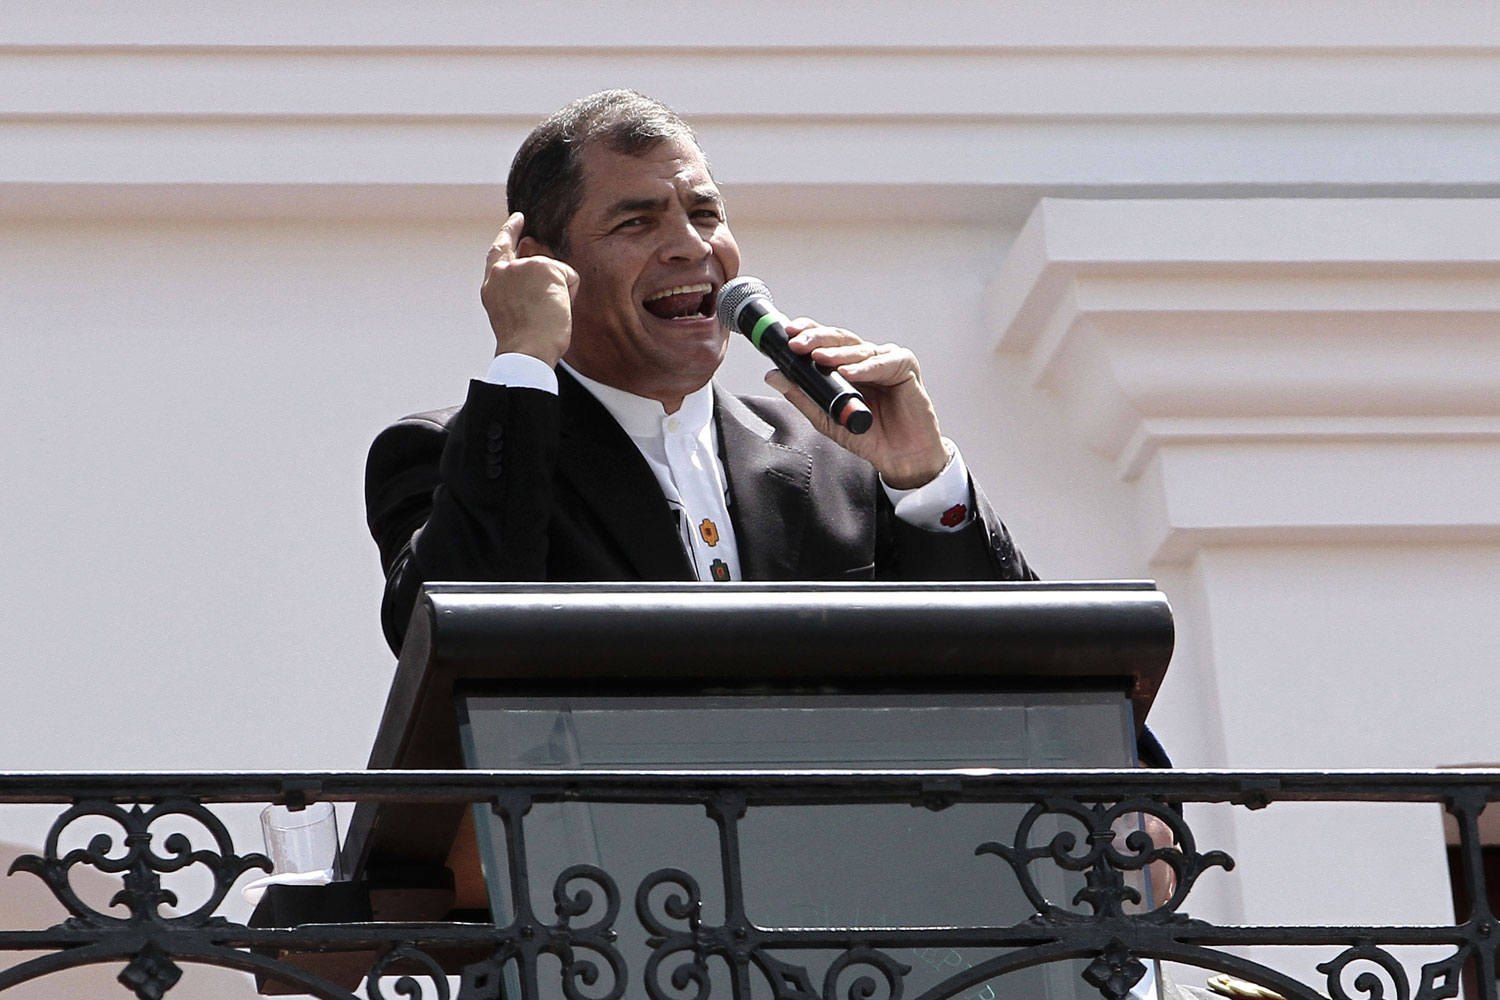 Correa pide ayuda para “rechazar con firmeza” la huelga opositora del próximo jueves